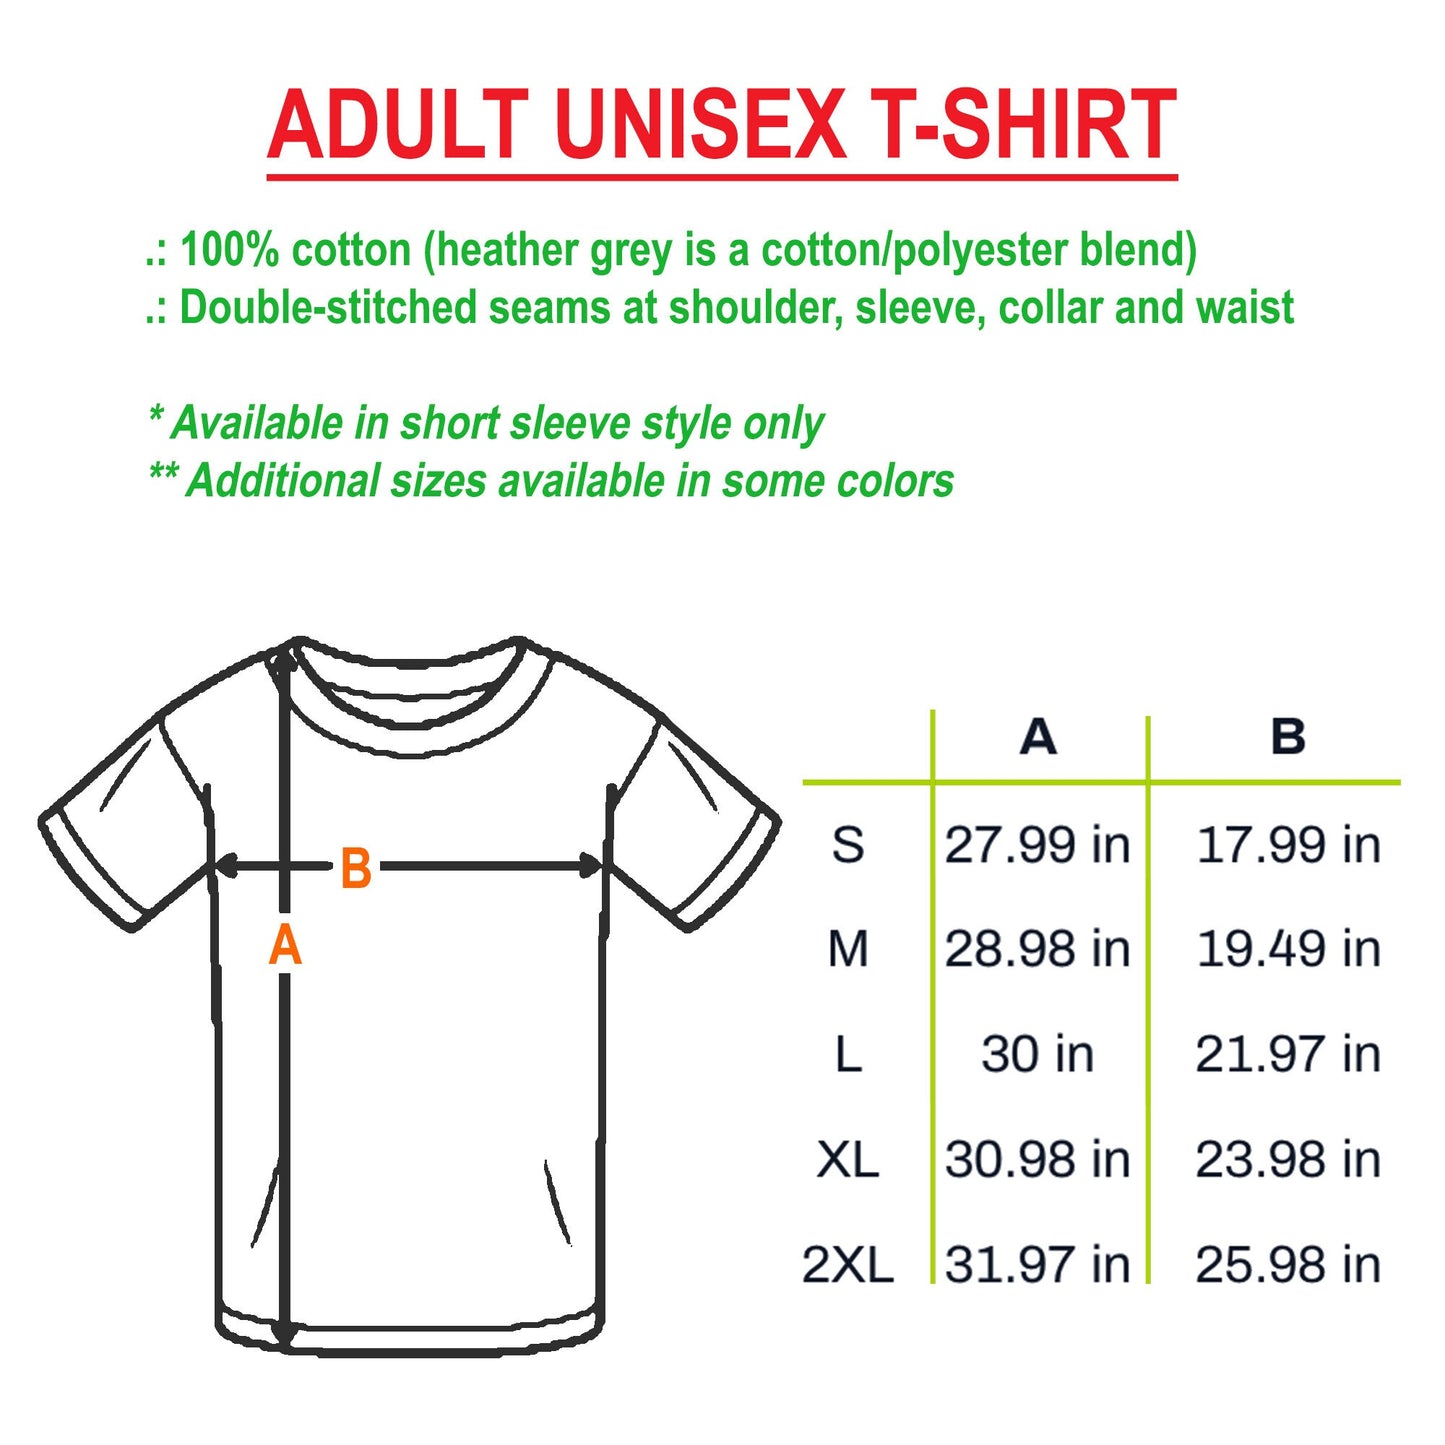 Trick Or Teach Shirt, Fall Teacher Librarian Shirts, Cute Teacher Shirts, Halloween Tshirt, Ghost Shirt, Spooky Teacher Shirt, Ghost Witch